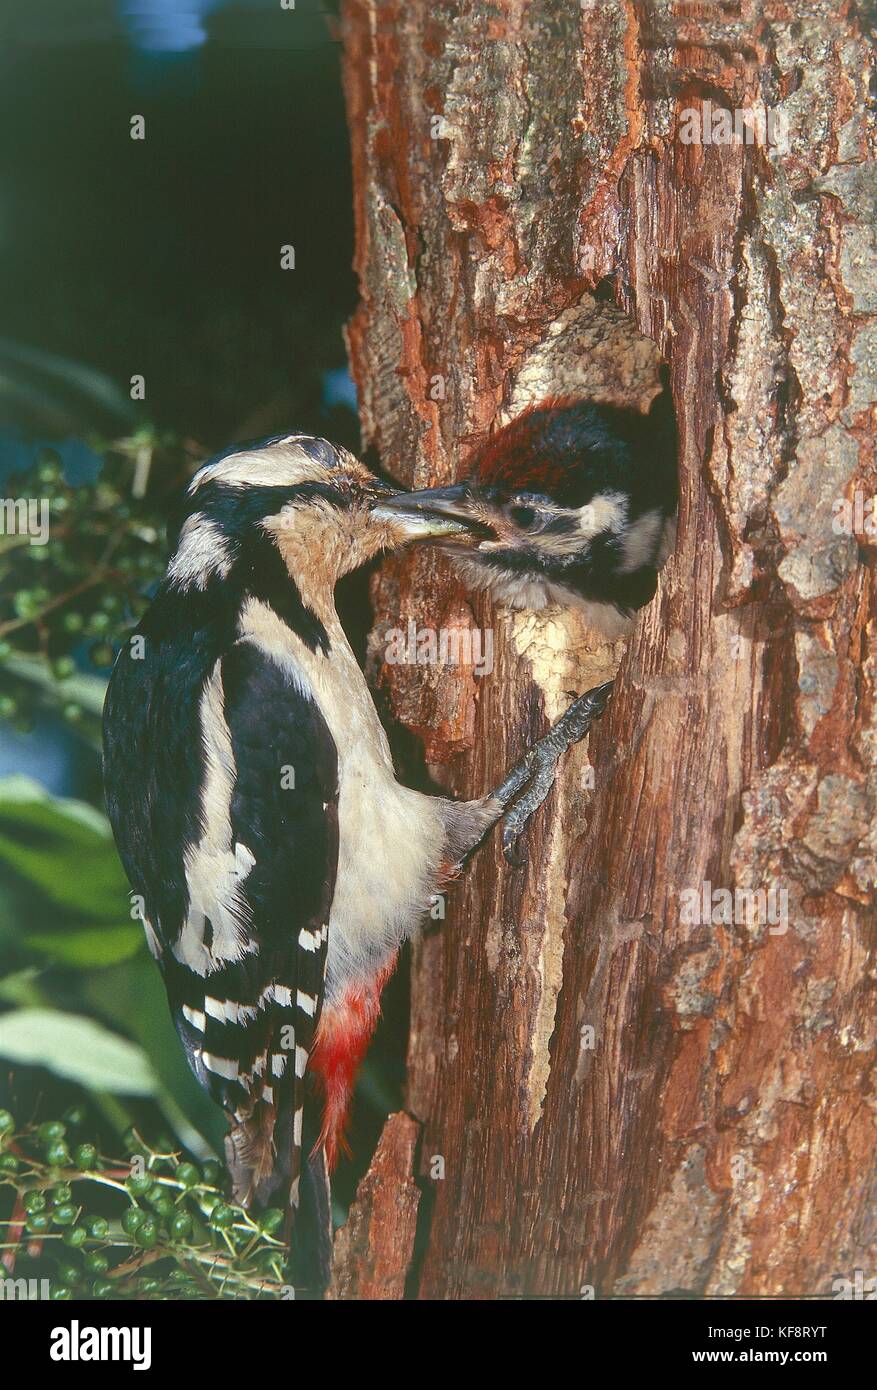 Zoología, aves piciformes, pico picapinos (dendrocopus major) alimentando a sus crías en el nido. Foto de stock